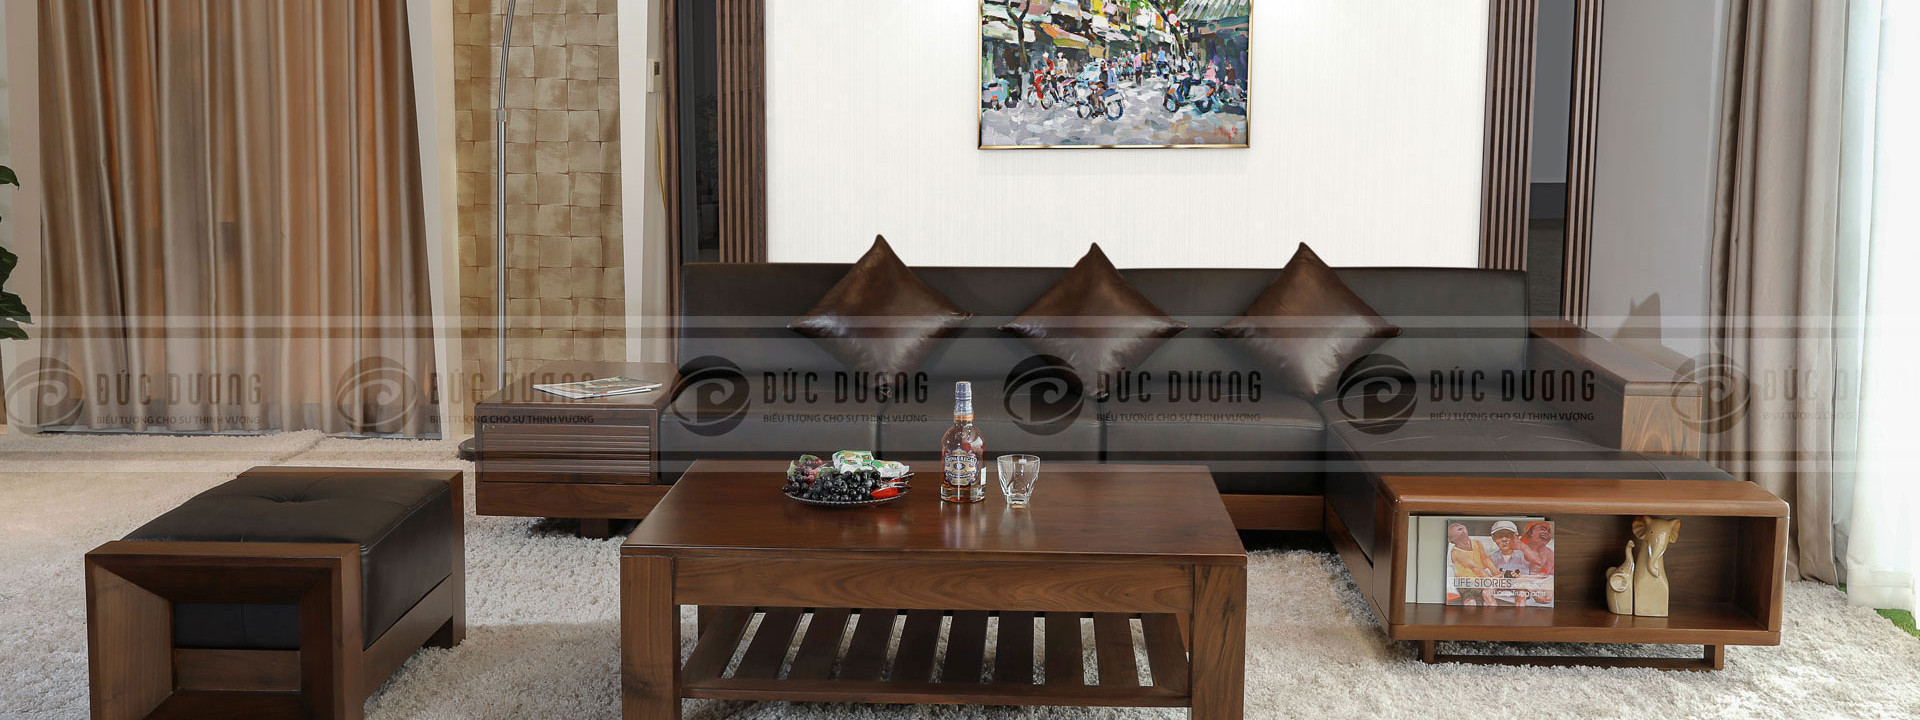 5 bộ bàn ghế sofa gỗ óc chó đẹp phù hợp cho nhiều phong cách thiết kế